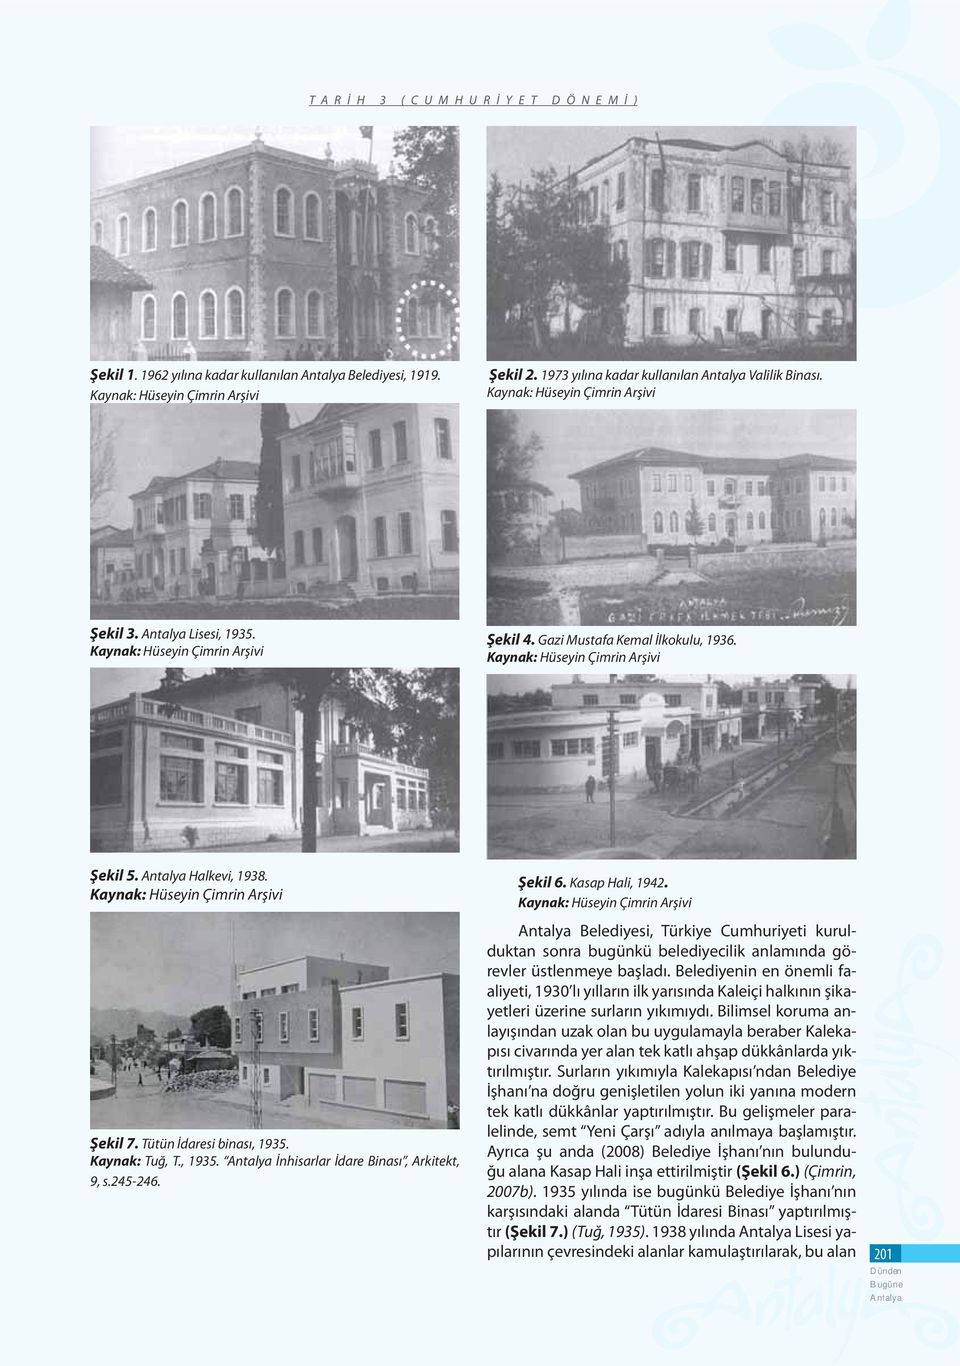 Kaynak: Hüseyin Çimrin Arşivi Şekil 7. Tütün İdaresi binası, 1935. Kaynak: Tuğ, T., 1935. İnhisarlar İdare Binası, Arkitekt, 9, s.245-246. Şekil 6. Kasap Hali, 1942.